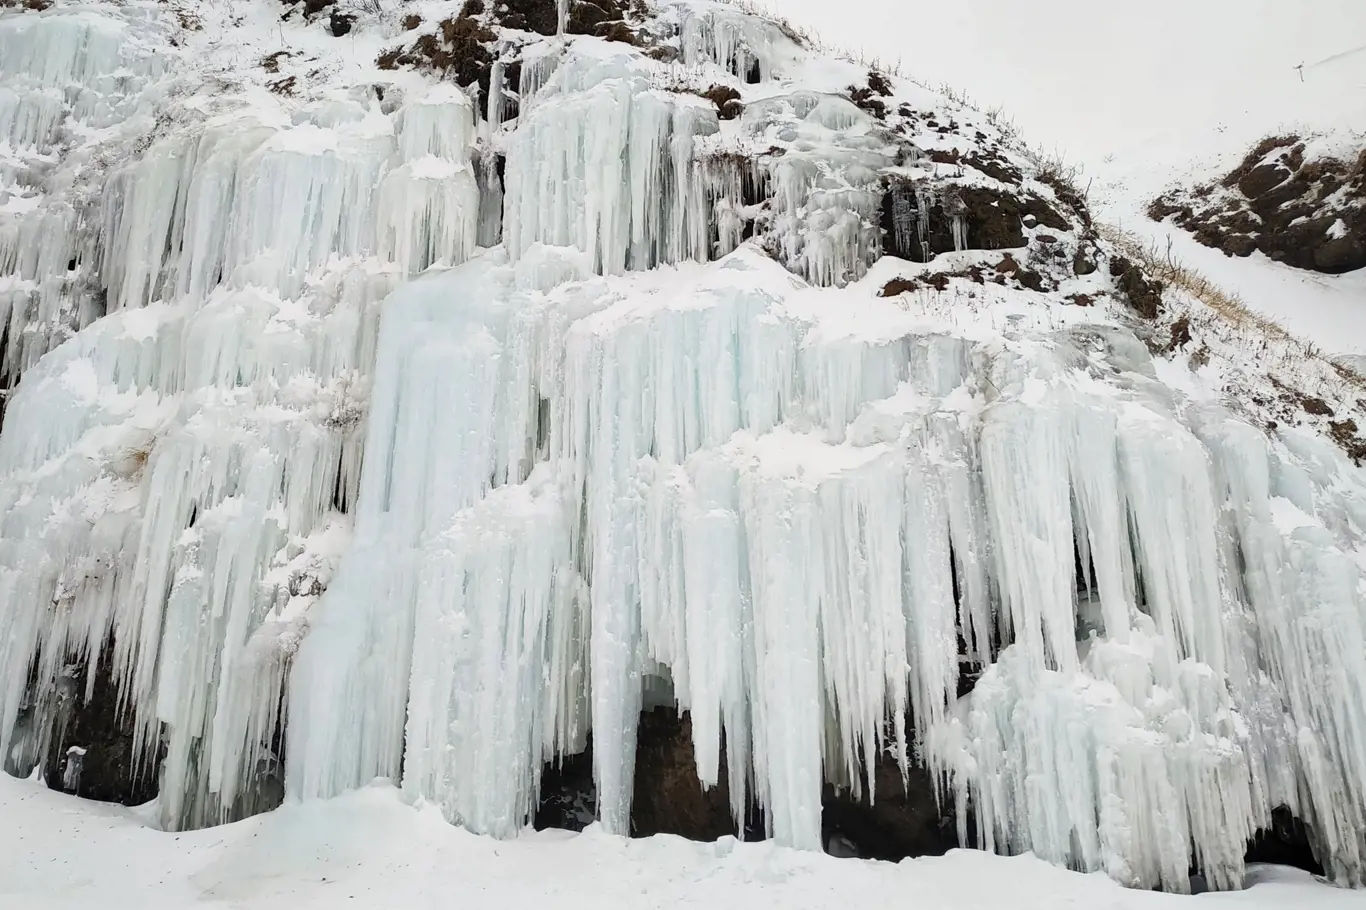 Ledopády vznikají mrznutím tajícího sněhu a vyrůstají především na pískovcových převisech, stěnách a ze stropů jeskyní